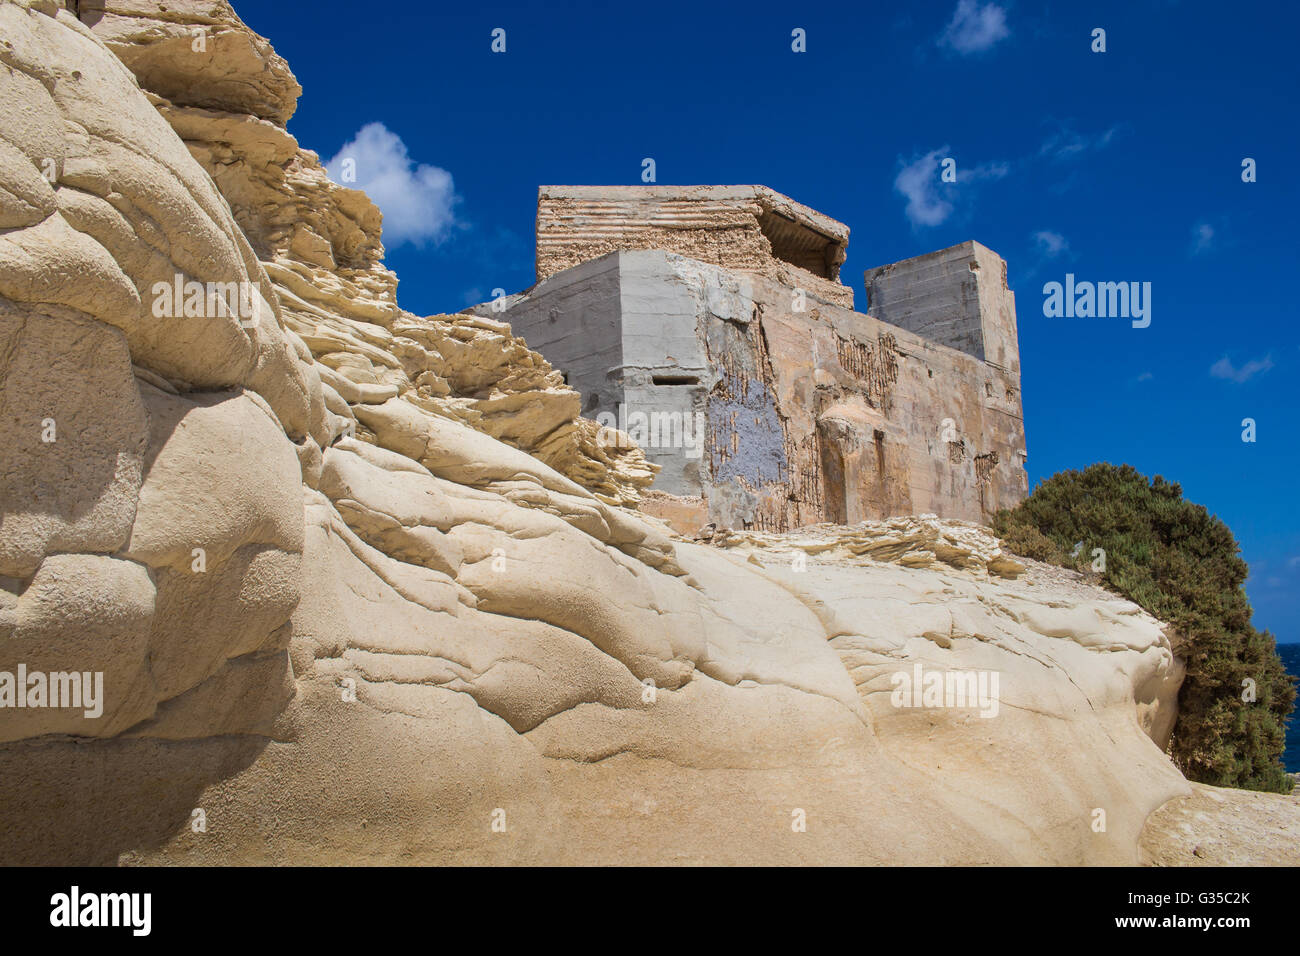 Sand Farbe der Felsen an der Küste des Mittelmeeres, Stadt Marsaskala, Insel Malta. Gebäude auf dem Hügel. Brigh Stockfoto